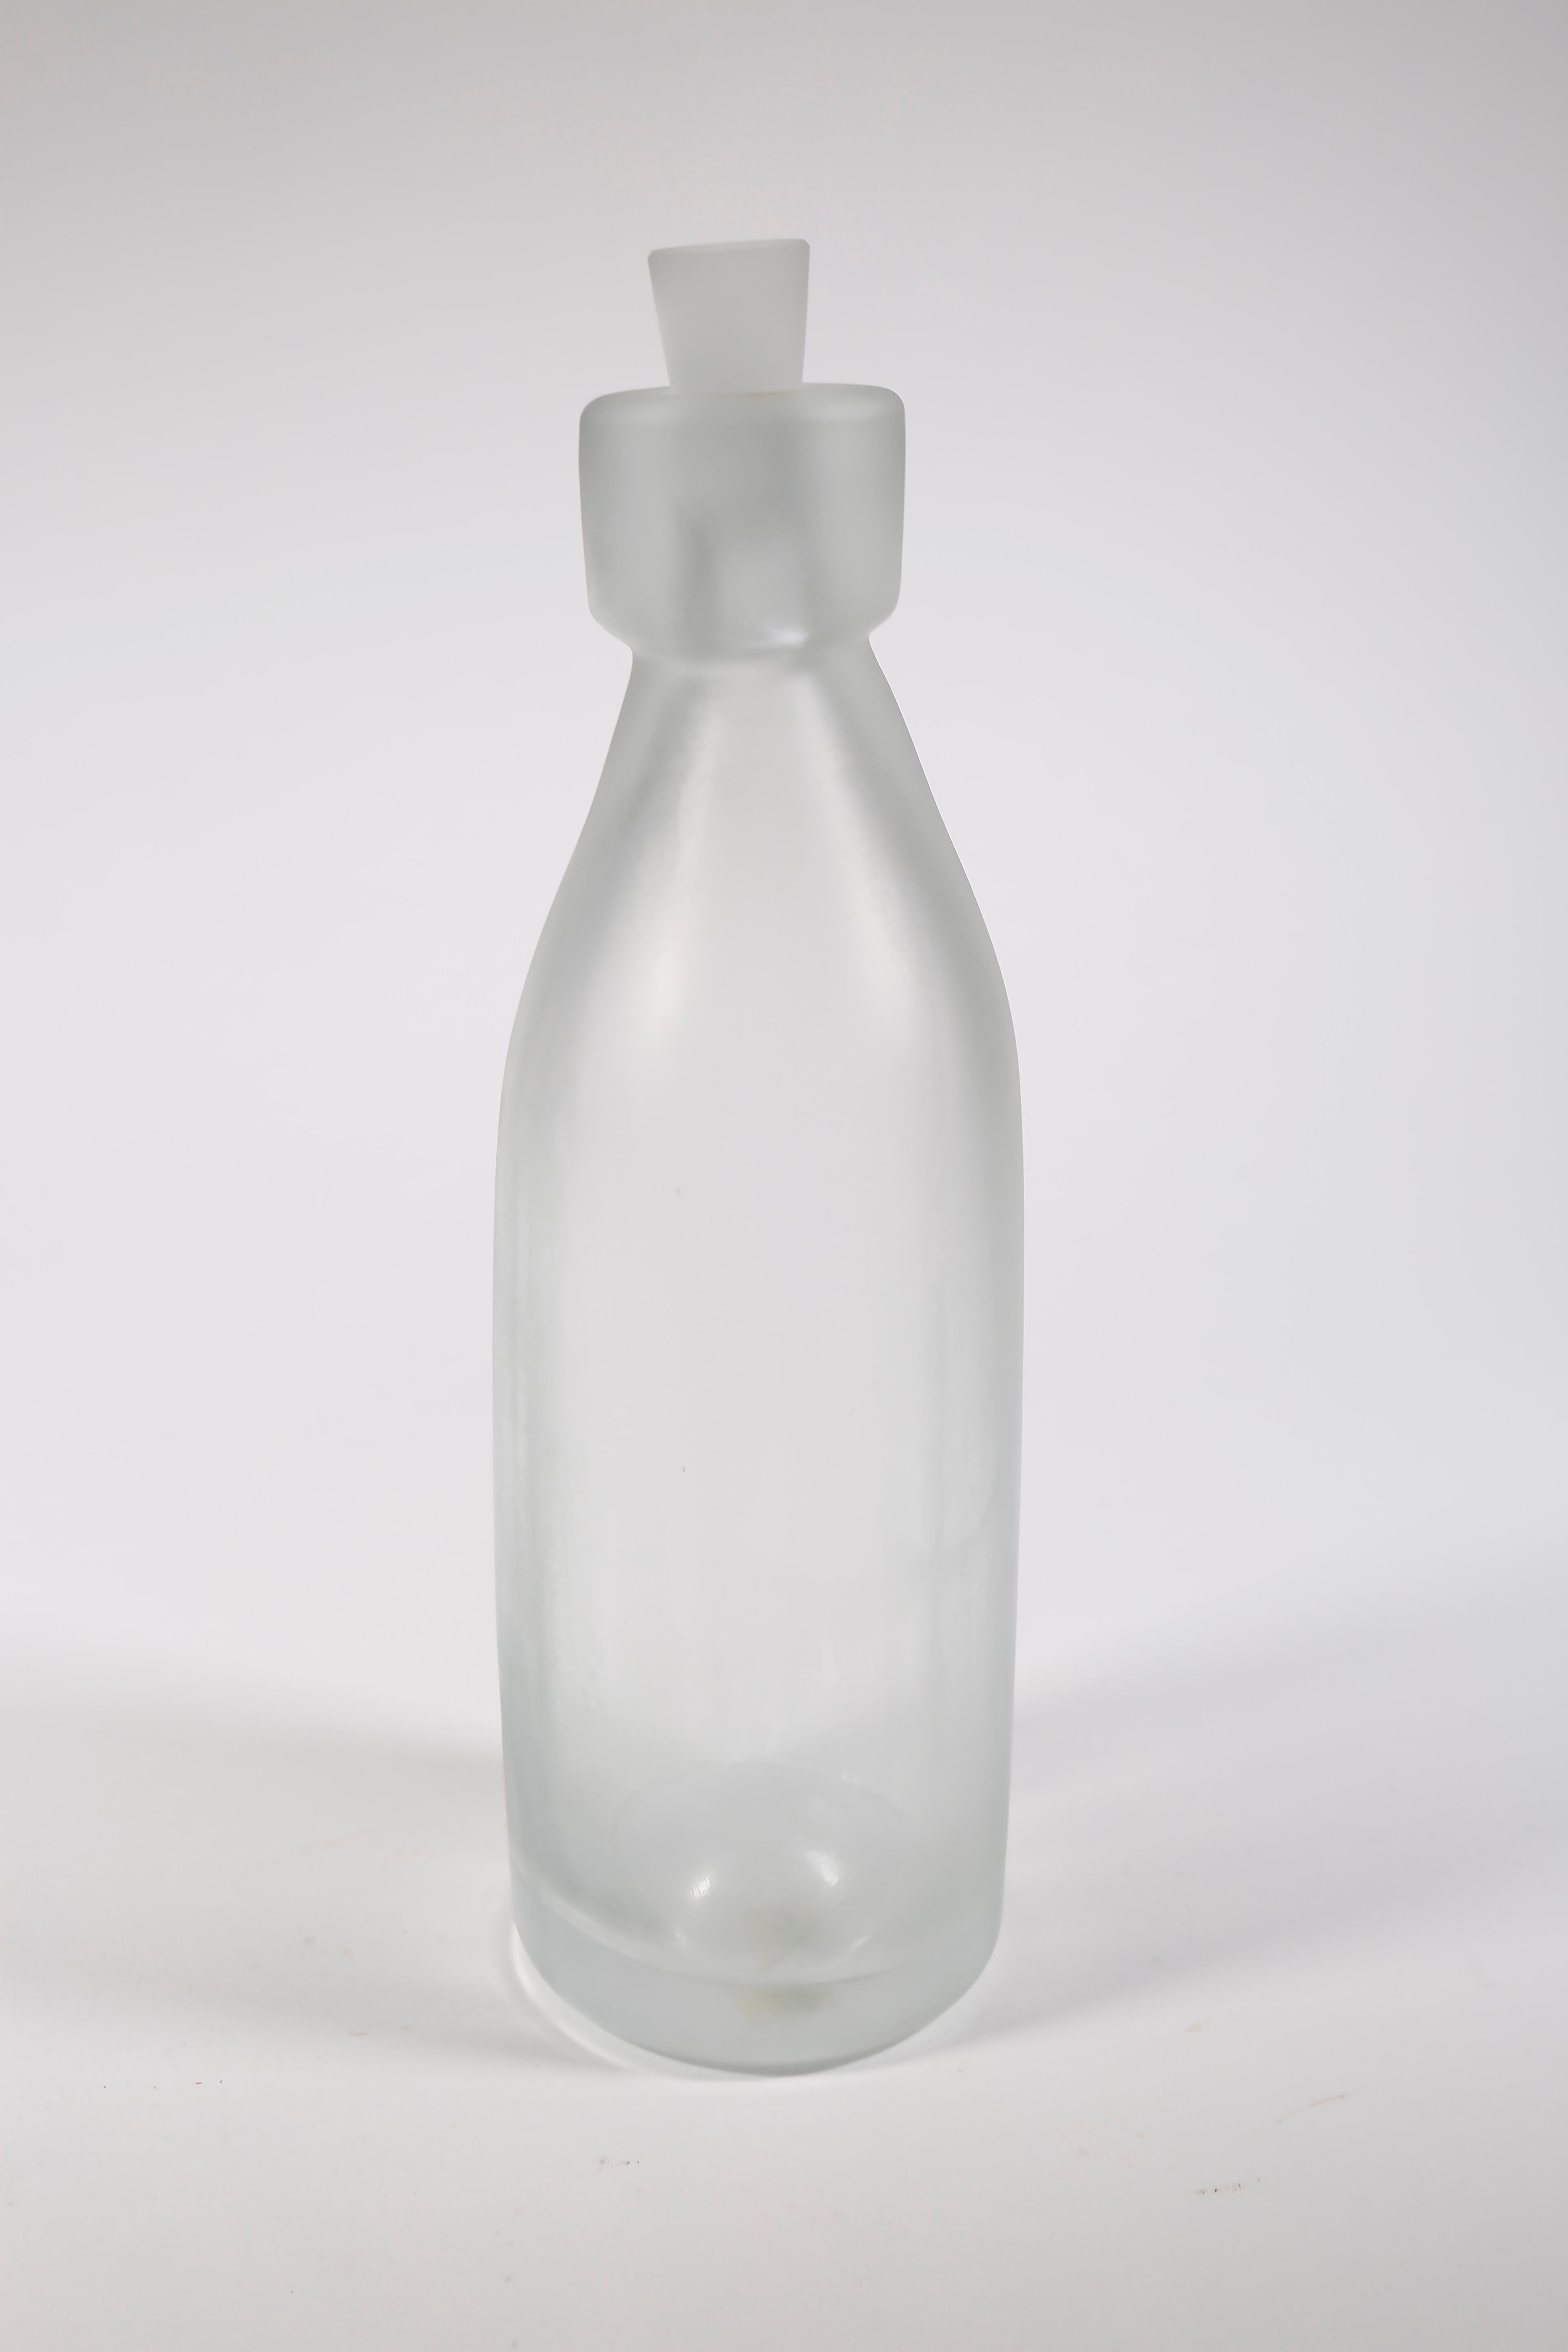 Whole Nother Melk Bottles/Vases: Etched Blown Glass, Chicago, Jordan Mozer, 2013 For Sale 10